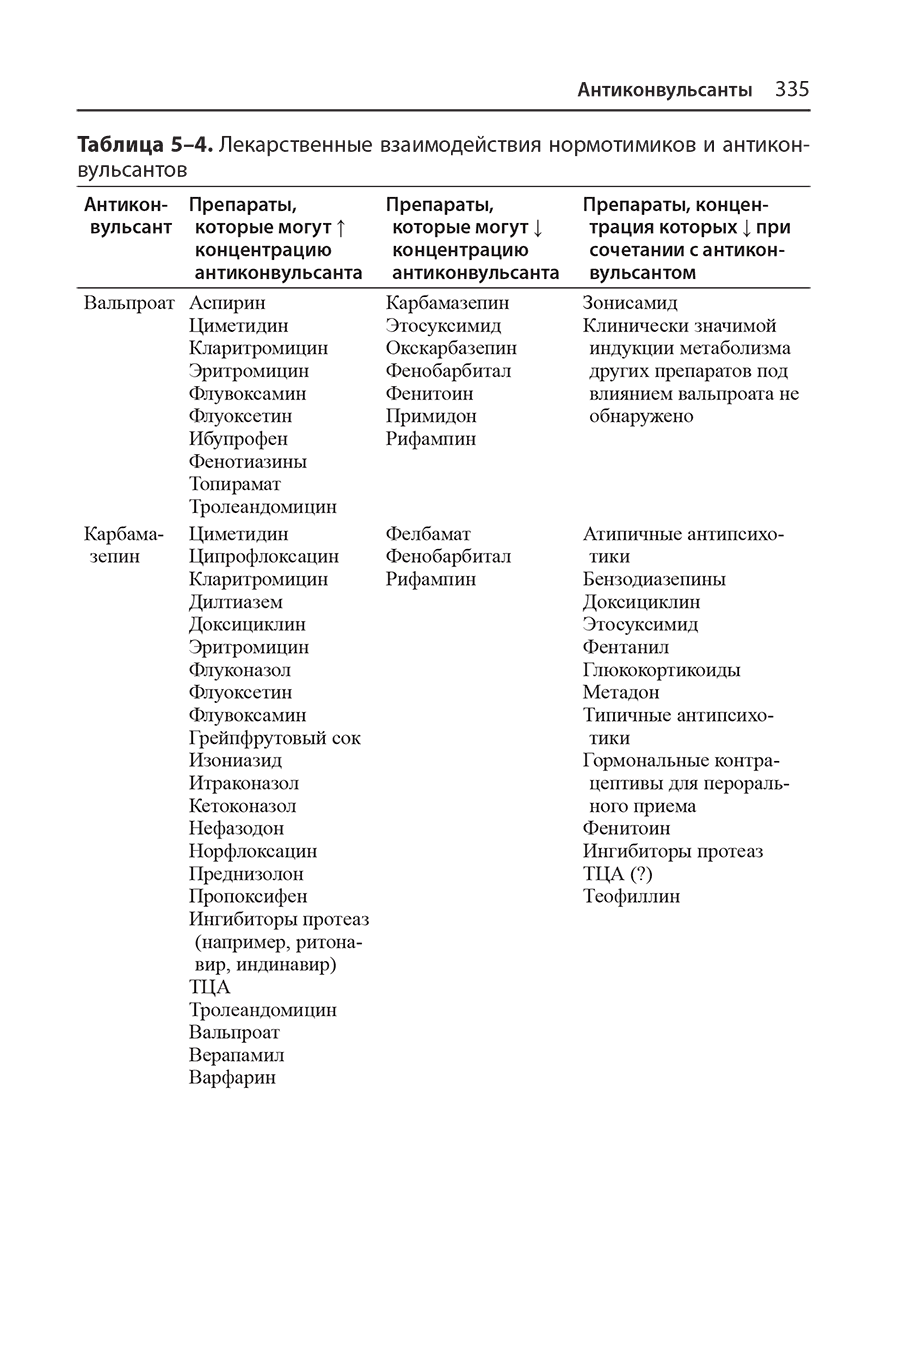 Таблица 5-4. Лекарственные взаимодействия нормотимиков и антиконвульсантов